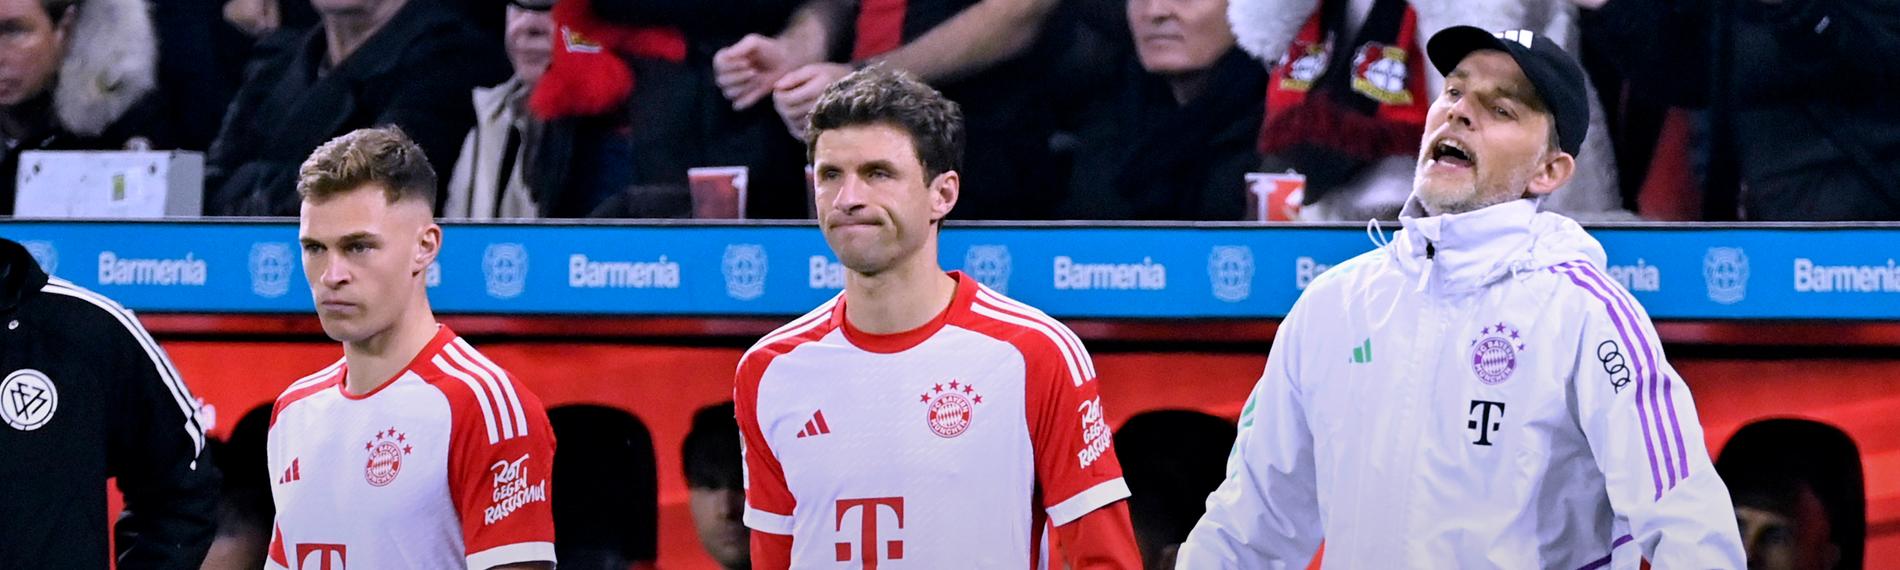 Fußball, Bundesliga, Bayer 04 Leverkusen - FC Bayern: Münchens Trainer Thomas Tuchel bei der Einwechslung mit Thomas Müller und Joshua Kimmich.